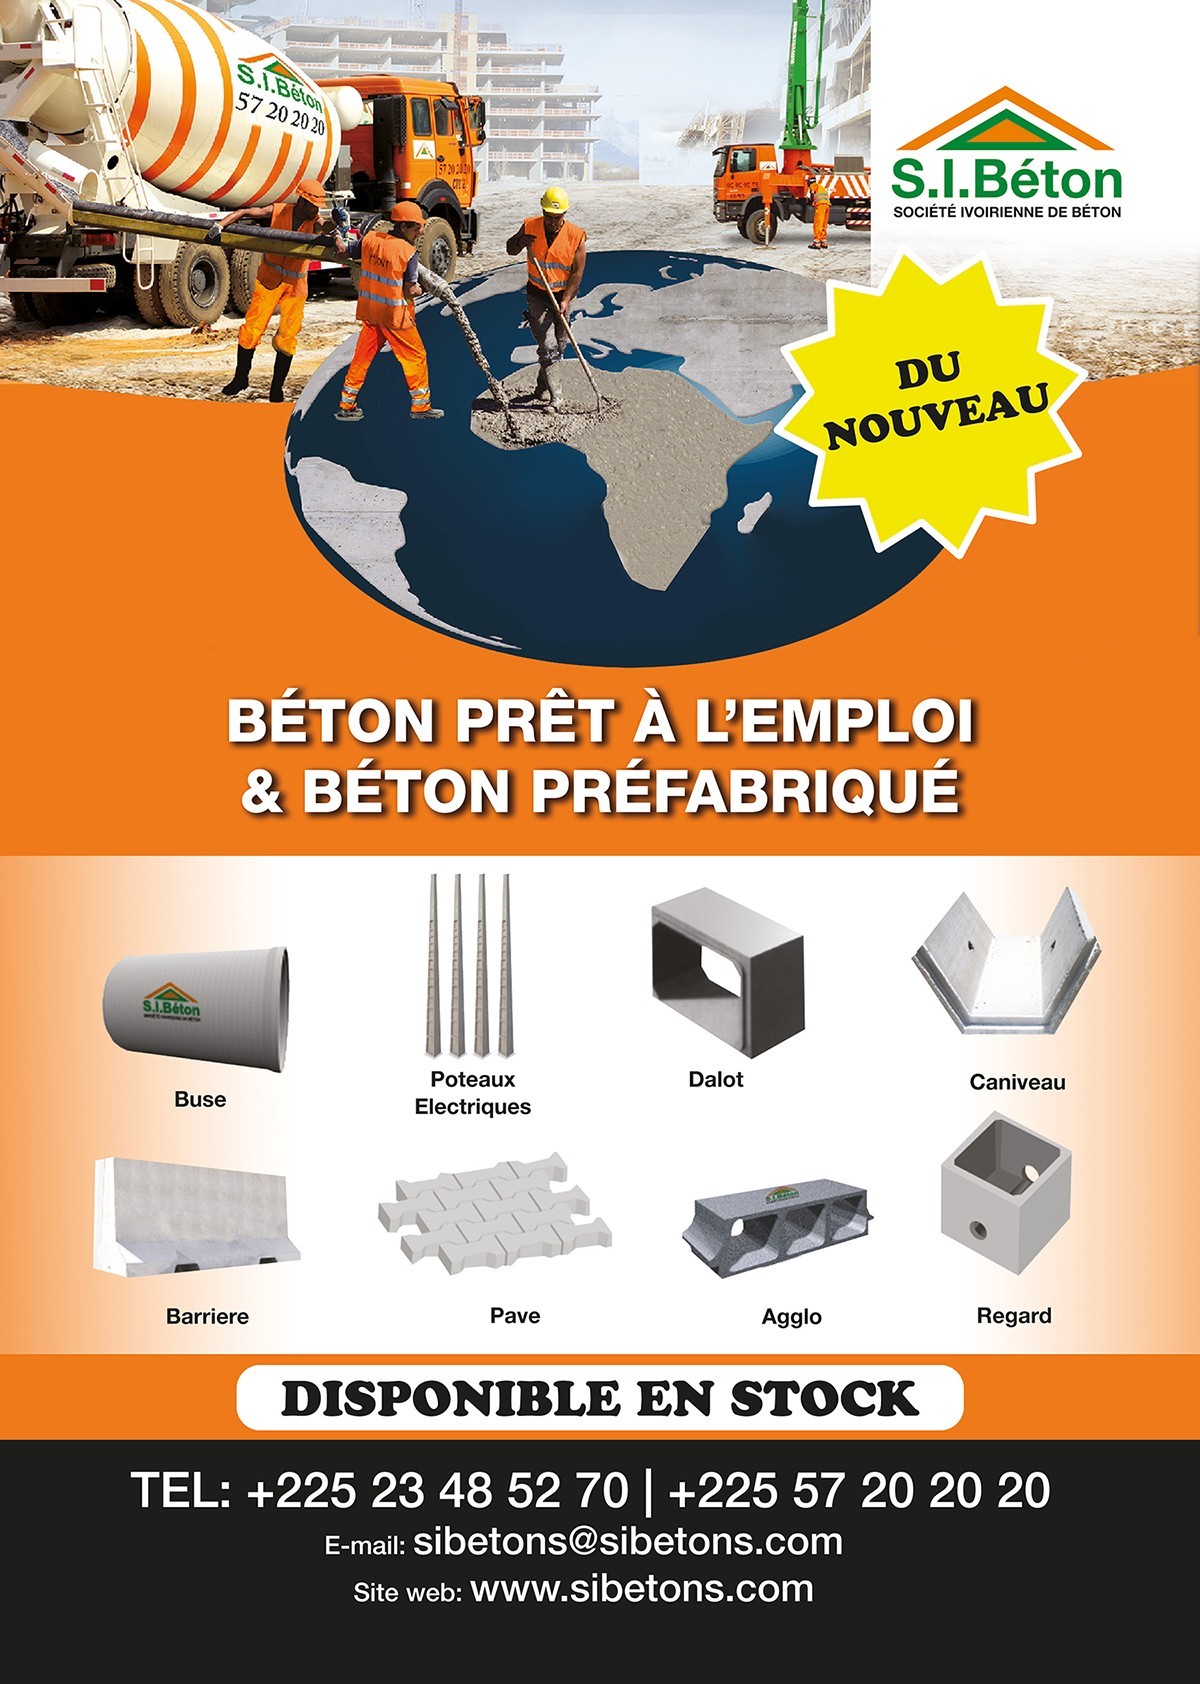 Archives des béton prêt à l'emploi - S.I.BETON-Société ivoirienne de  béton-Béton prêt à l'emploi et préfabriqué